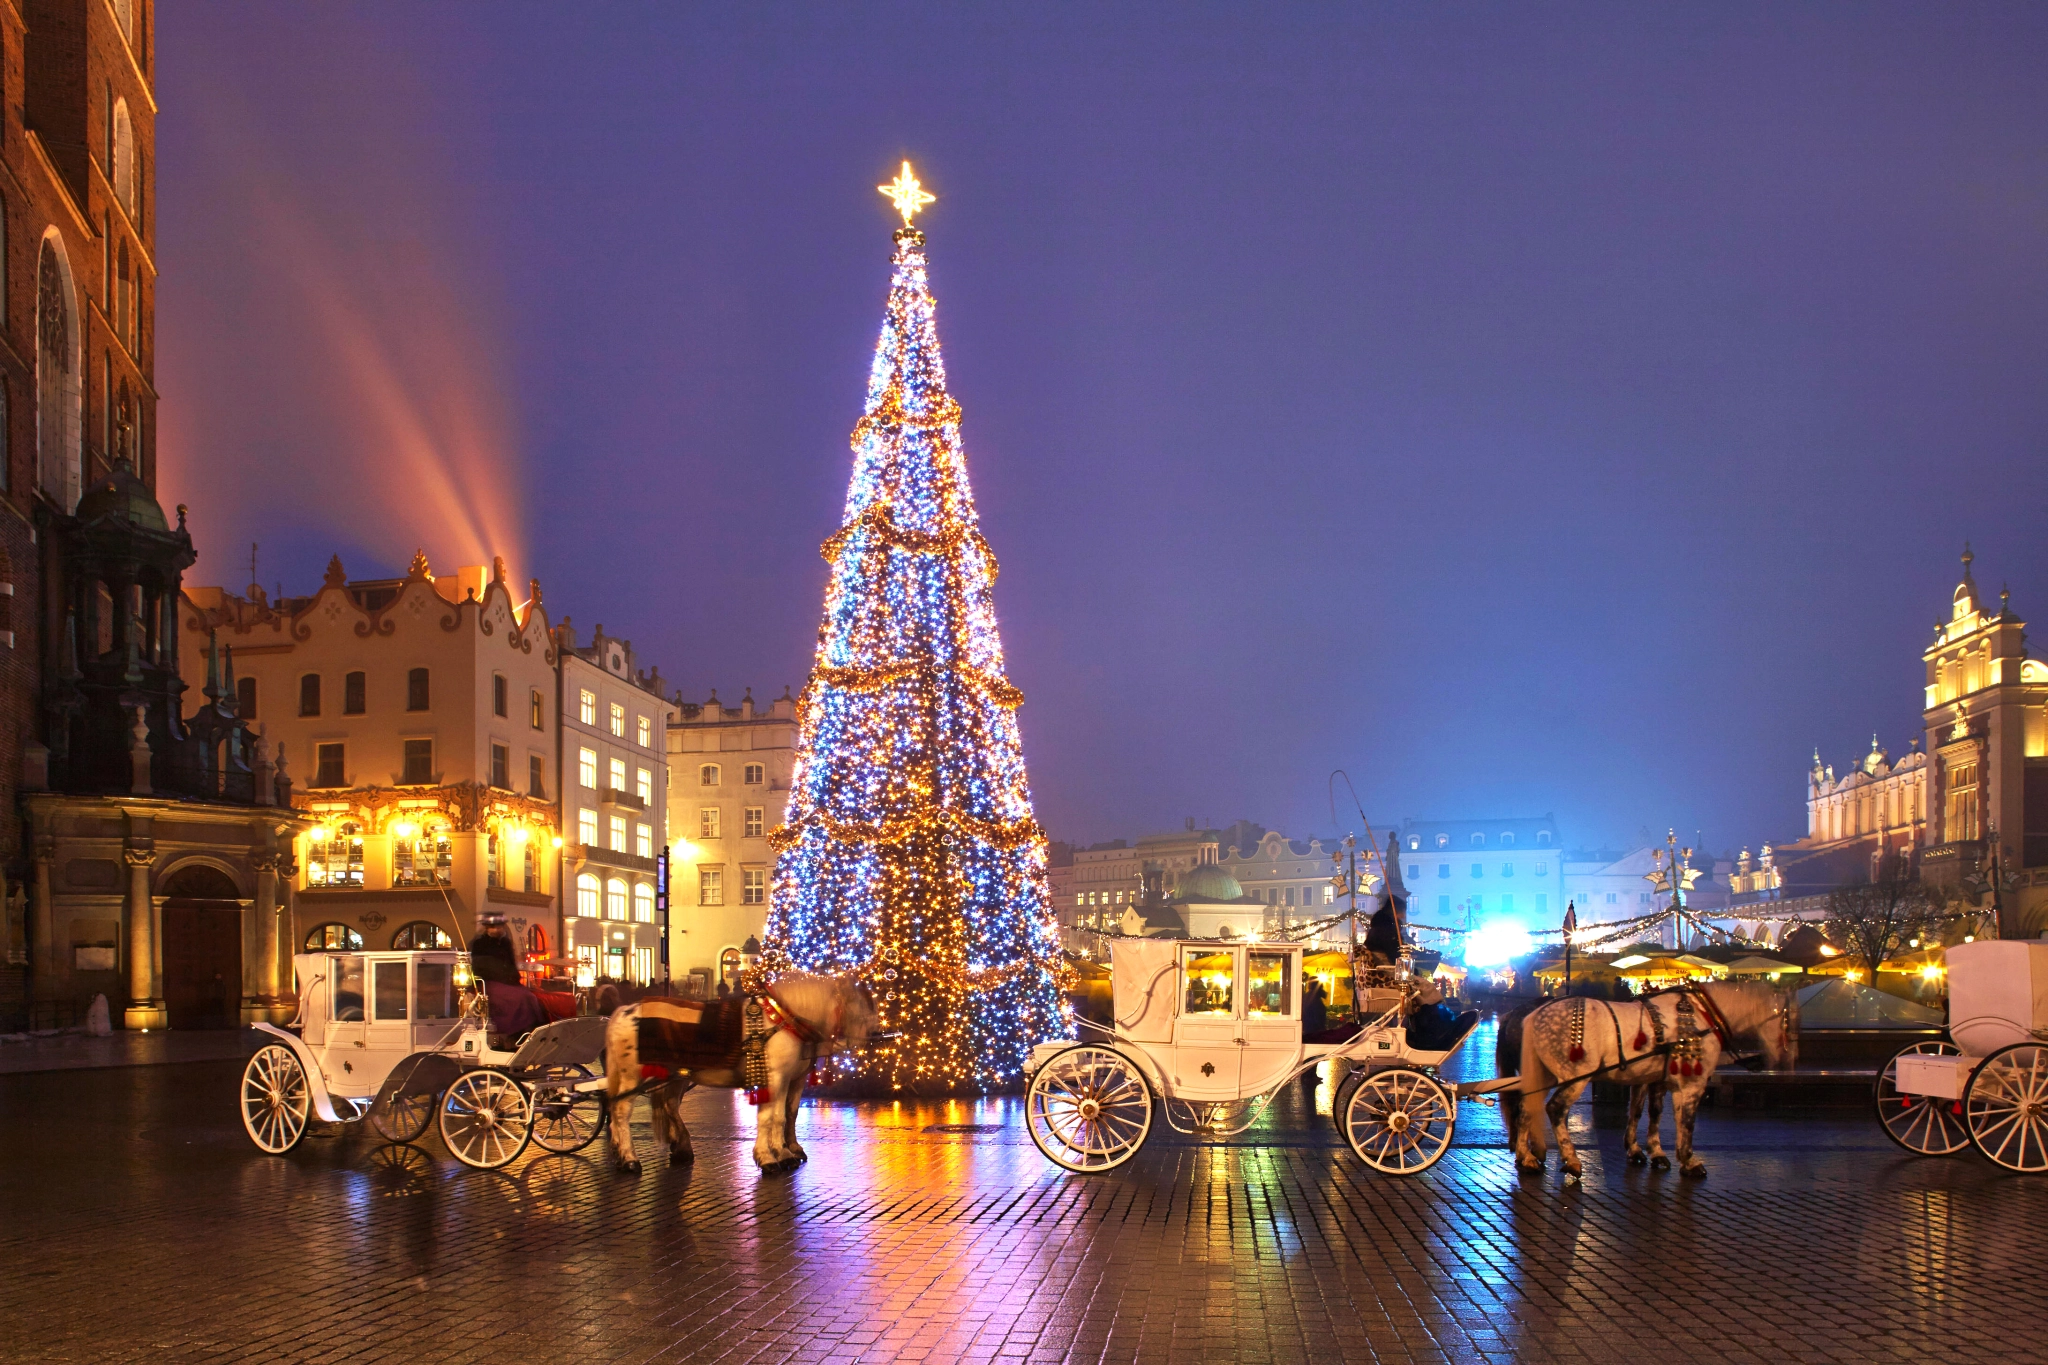 Krakow Christmas Market